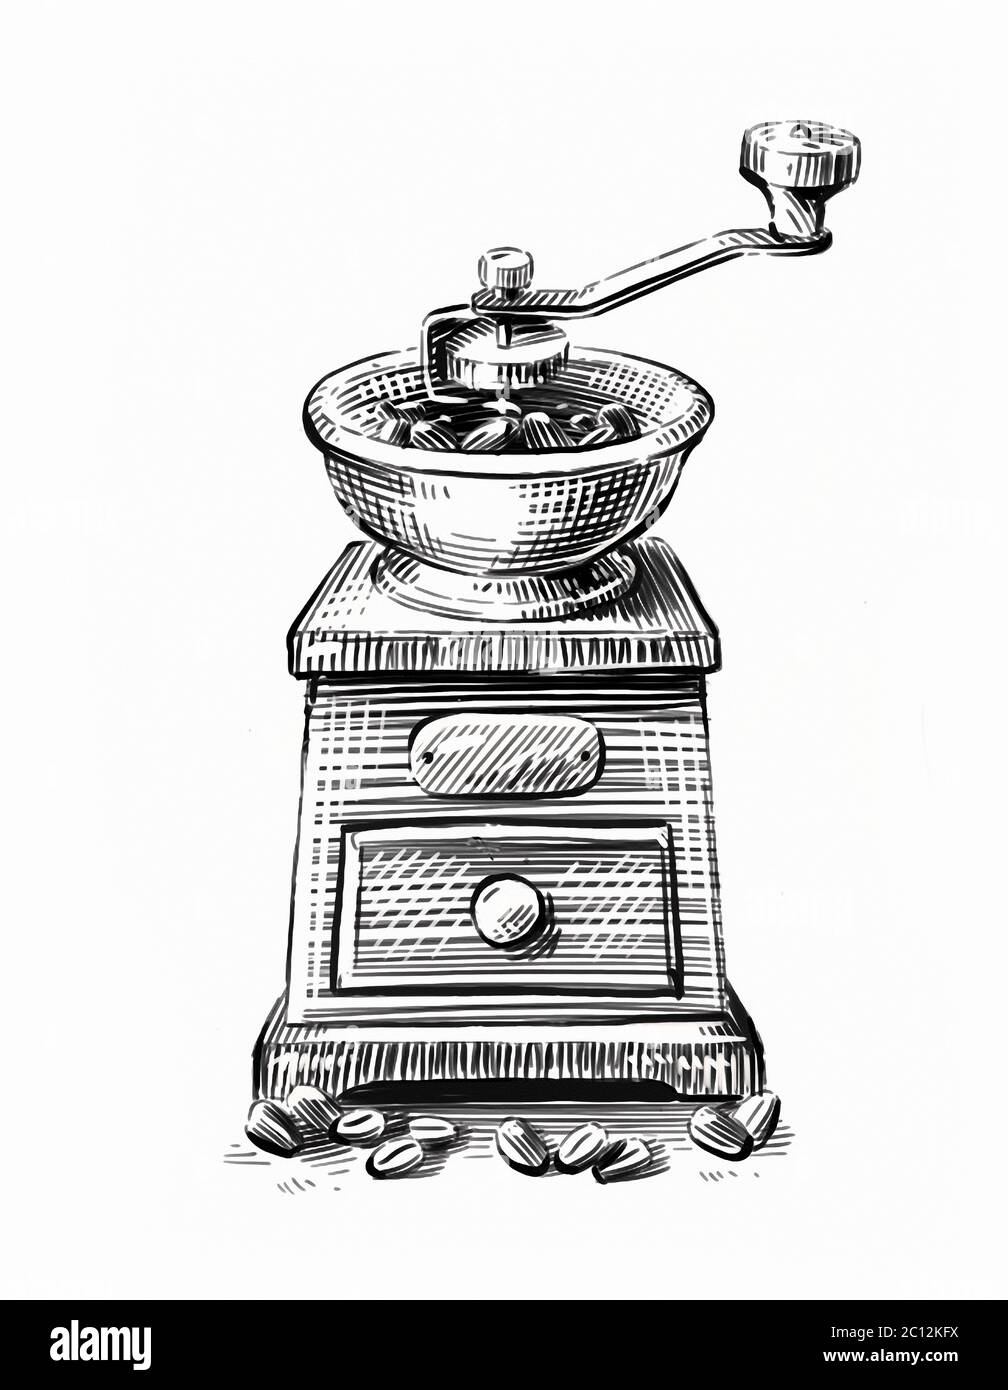 Handgezeichnete Skizze Kaffeemühle isoliert auf weißem Hintergrund Stockfoto